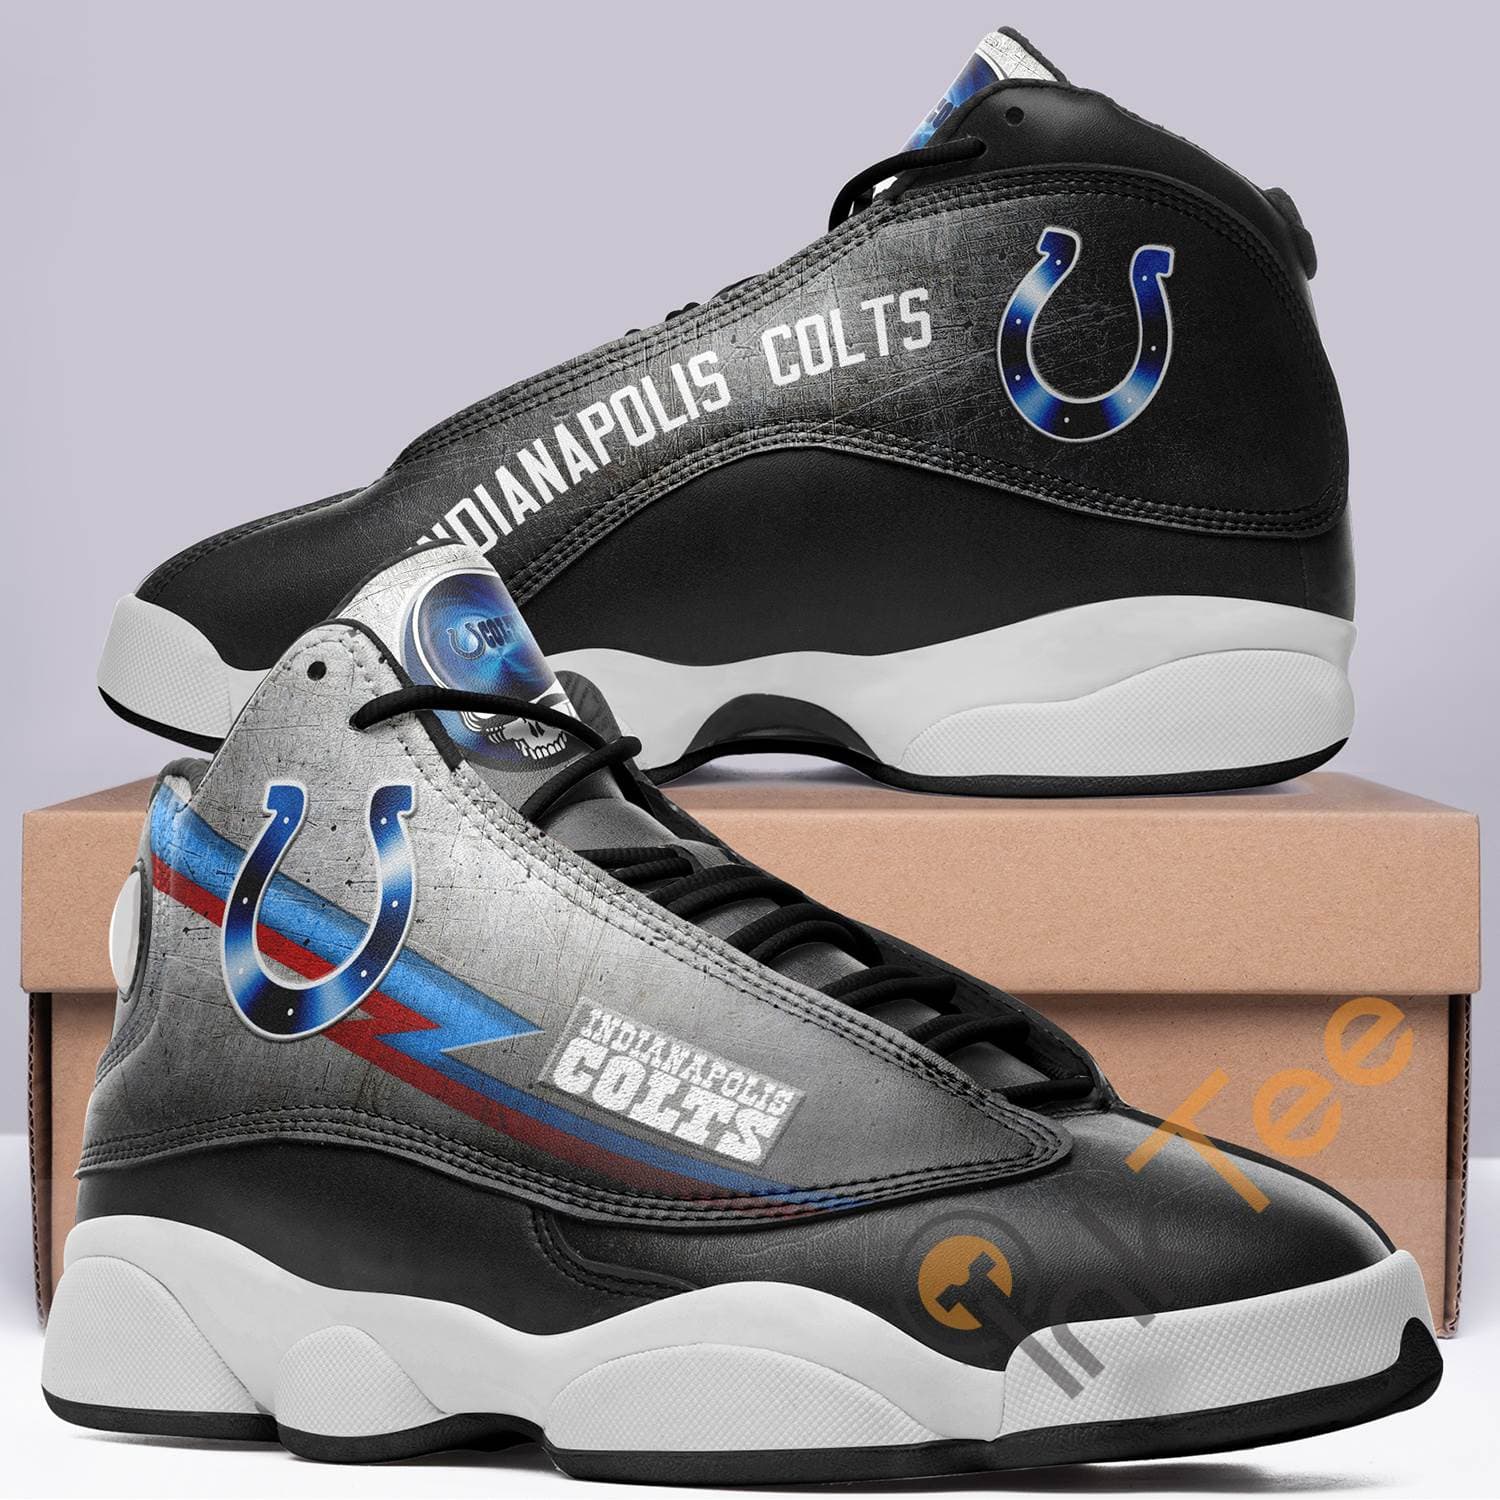 Indianapolis Colts Air Jordan Shoes